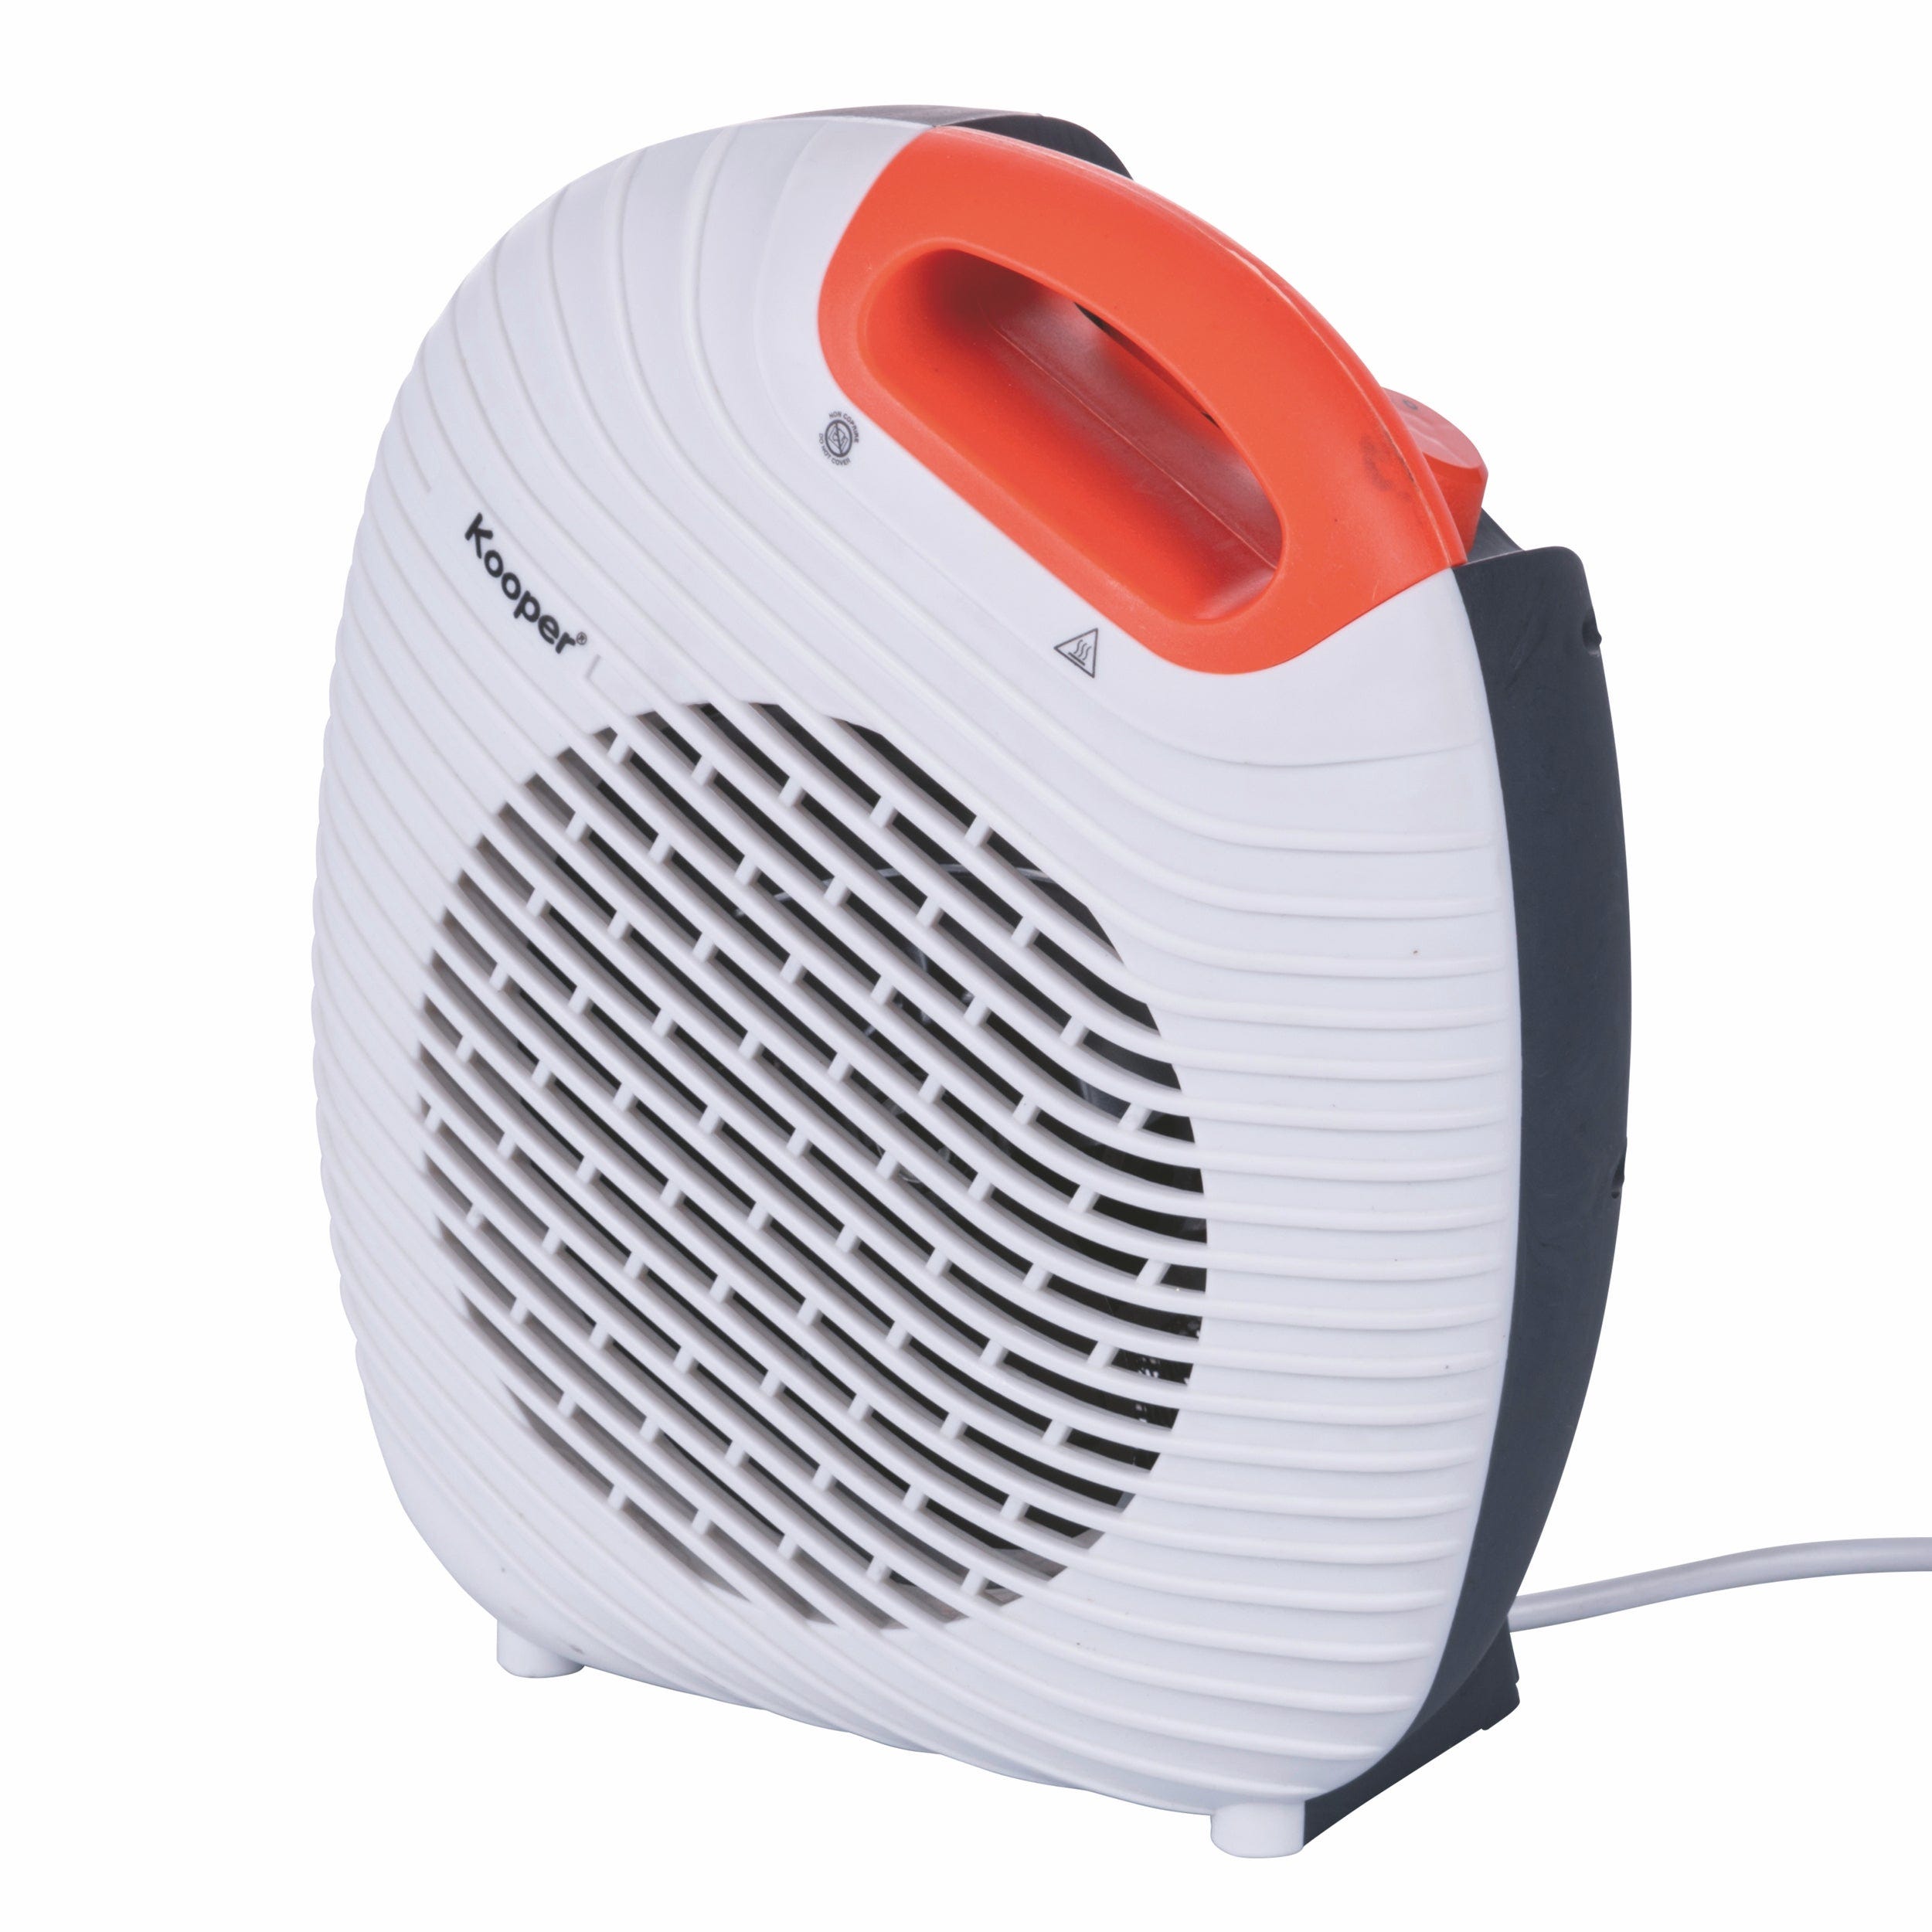 Mini radiateur électrique Portable,petit ventilateur à Air chaud d